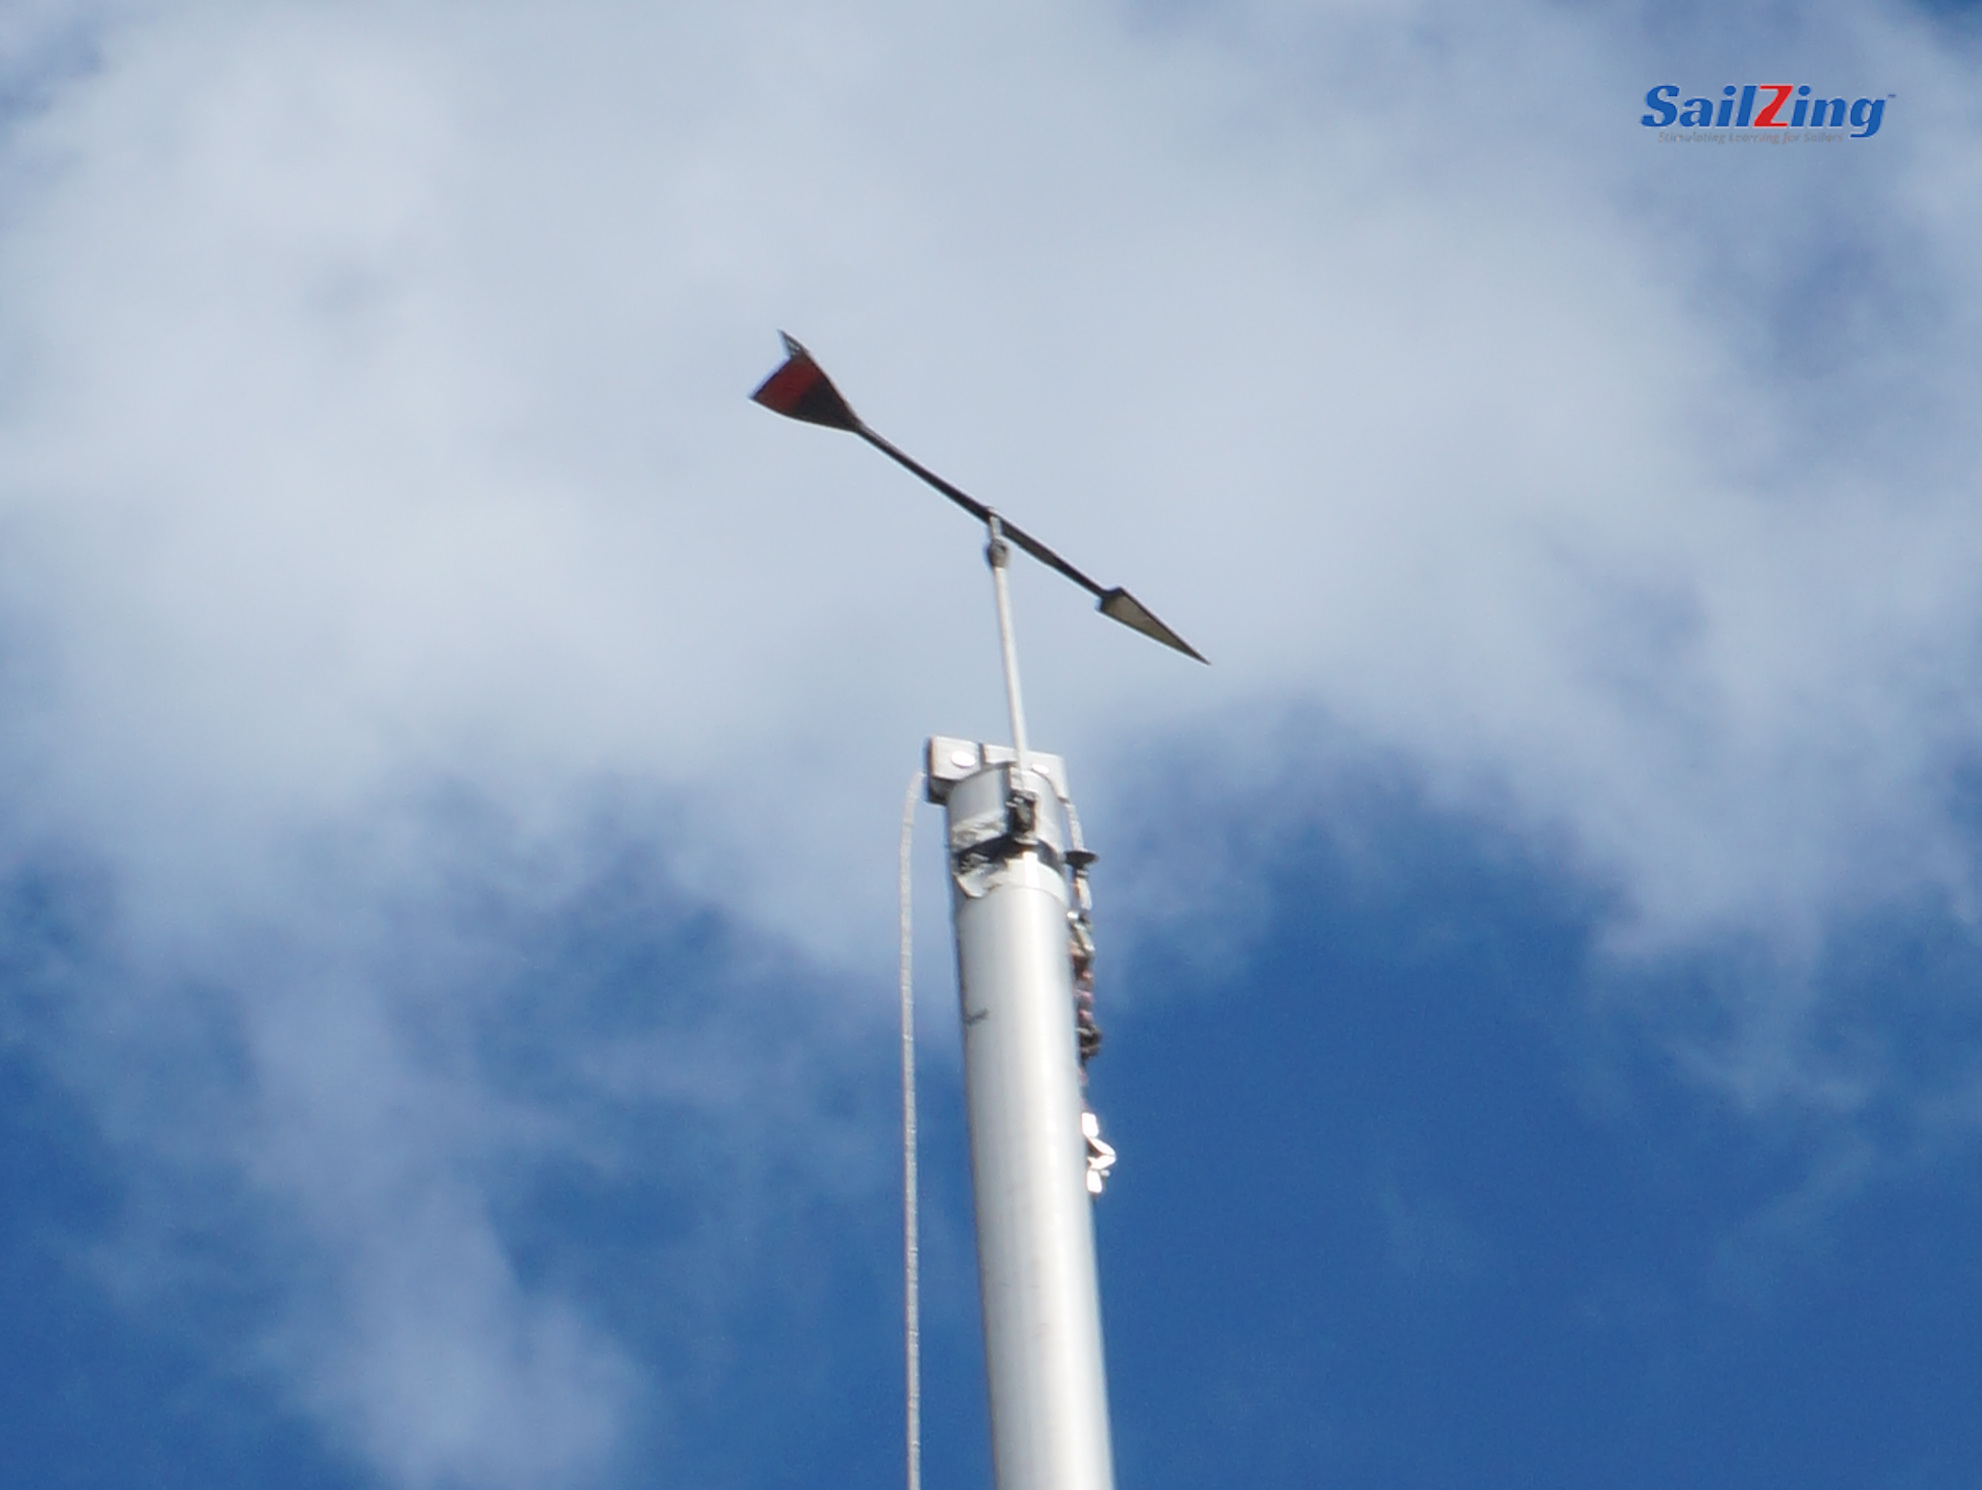 Should You Use Masthead Wind Indicator? SailZing